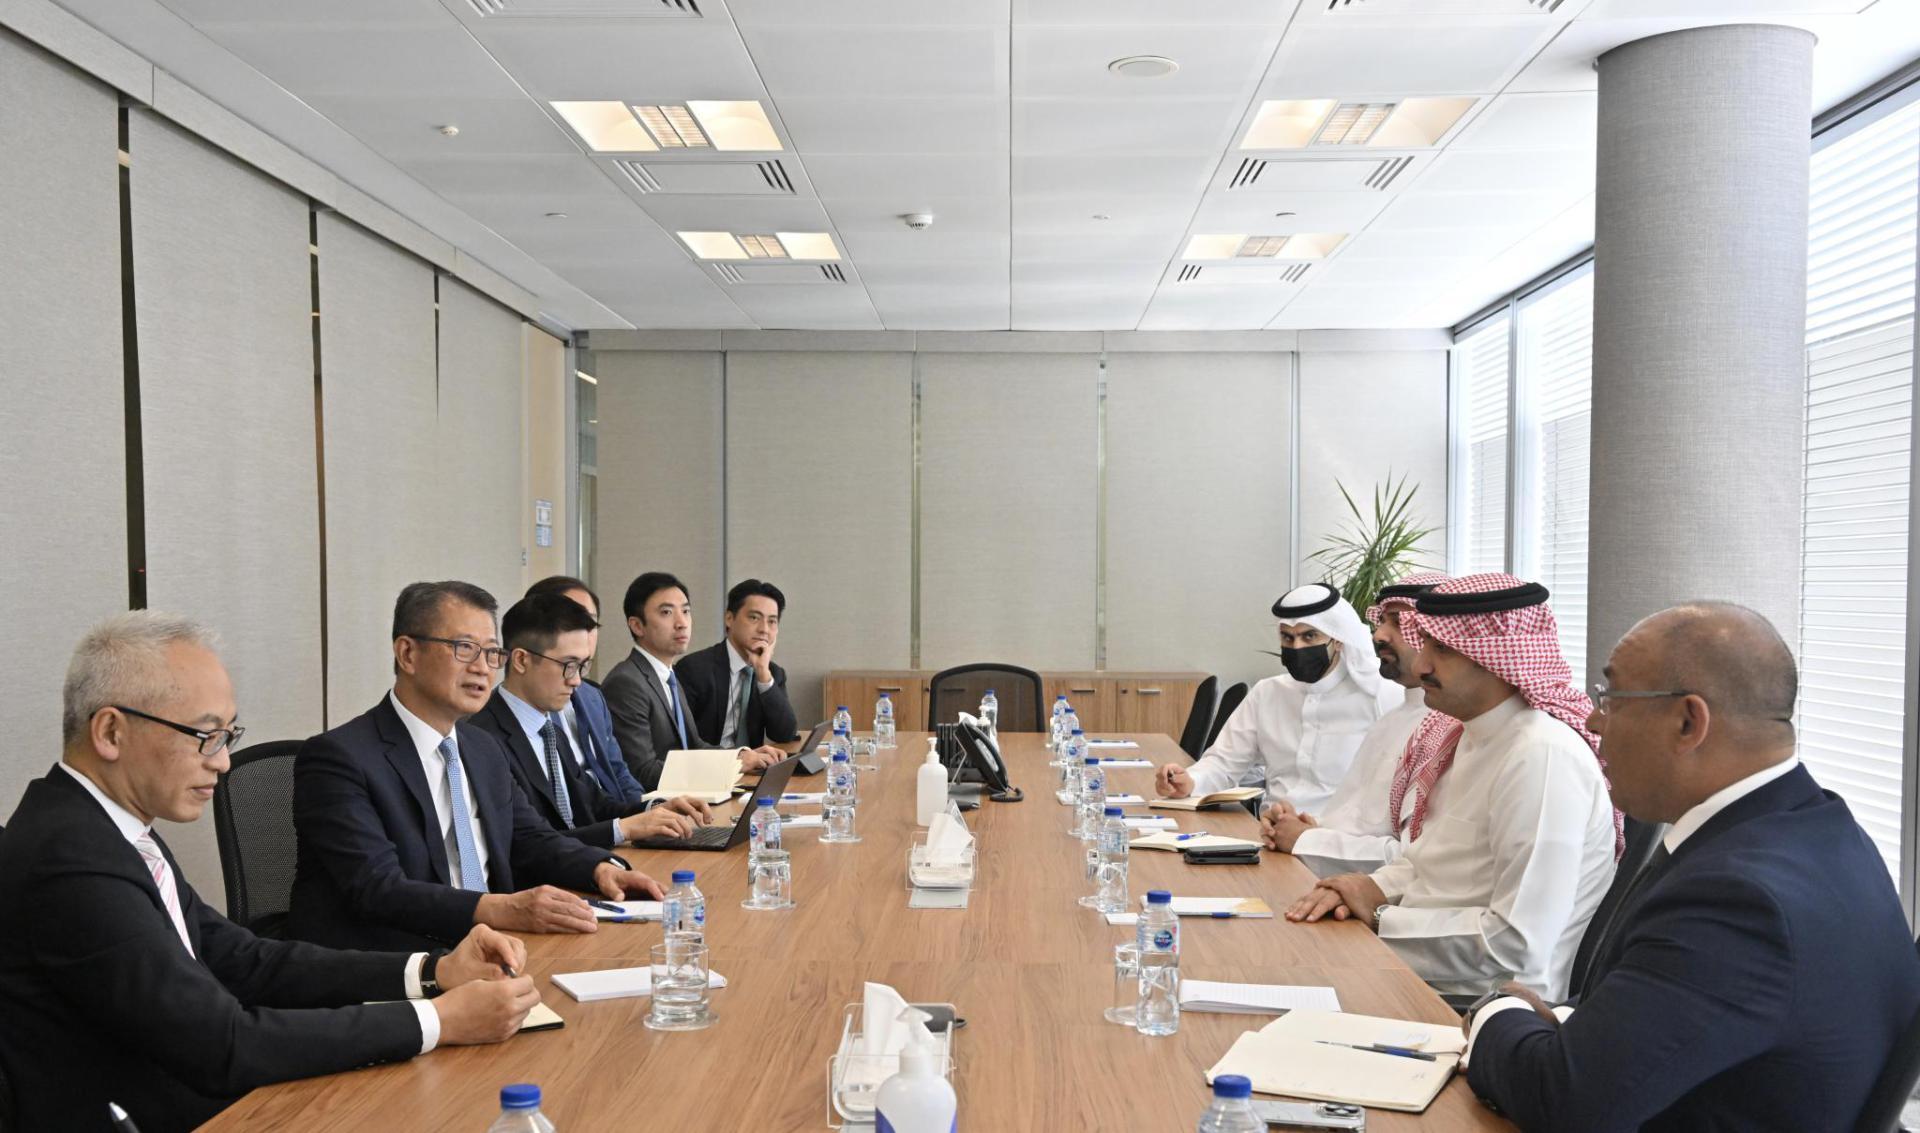 財政司司長陳茂波昨日（十月二十四日，巴林時間）繼續巴林訪問行程。圖示陳茂波（左二）與Osool資產管理公司行政總裁Sheikh Abdulla bin Khalifa Al Khalifa（右二）會面。